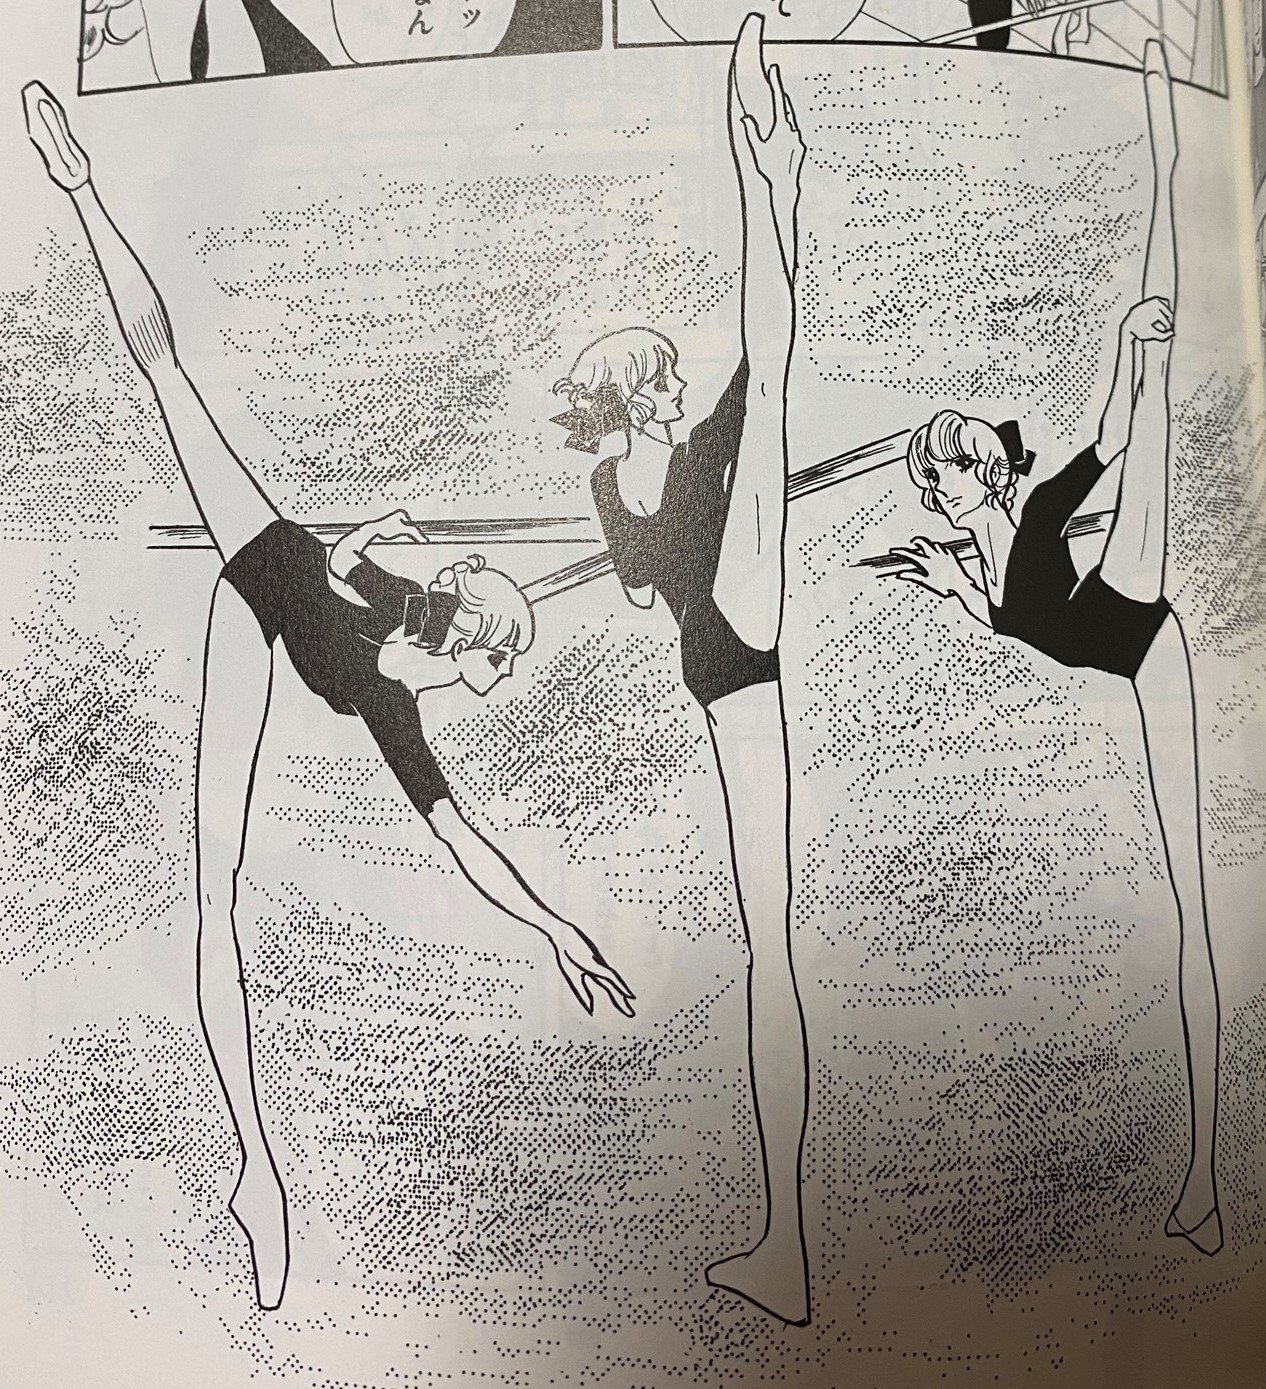 バレエ漫画60年の遍歴 1970年代編 せのおです Note